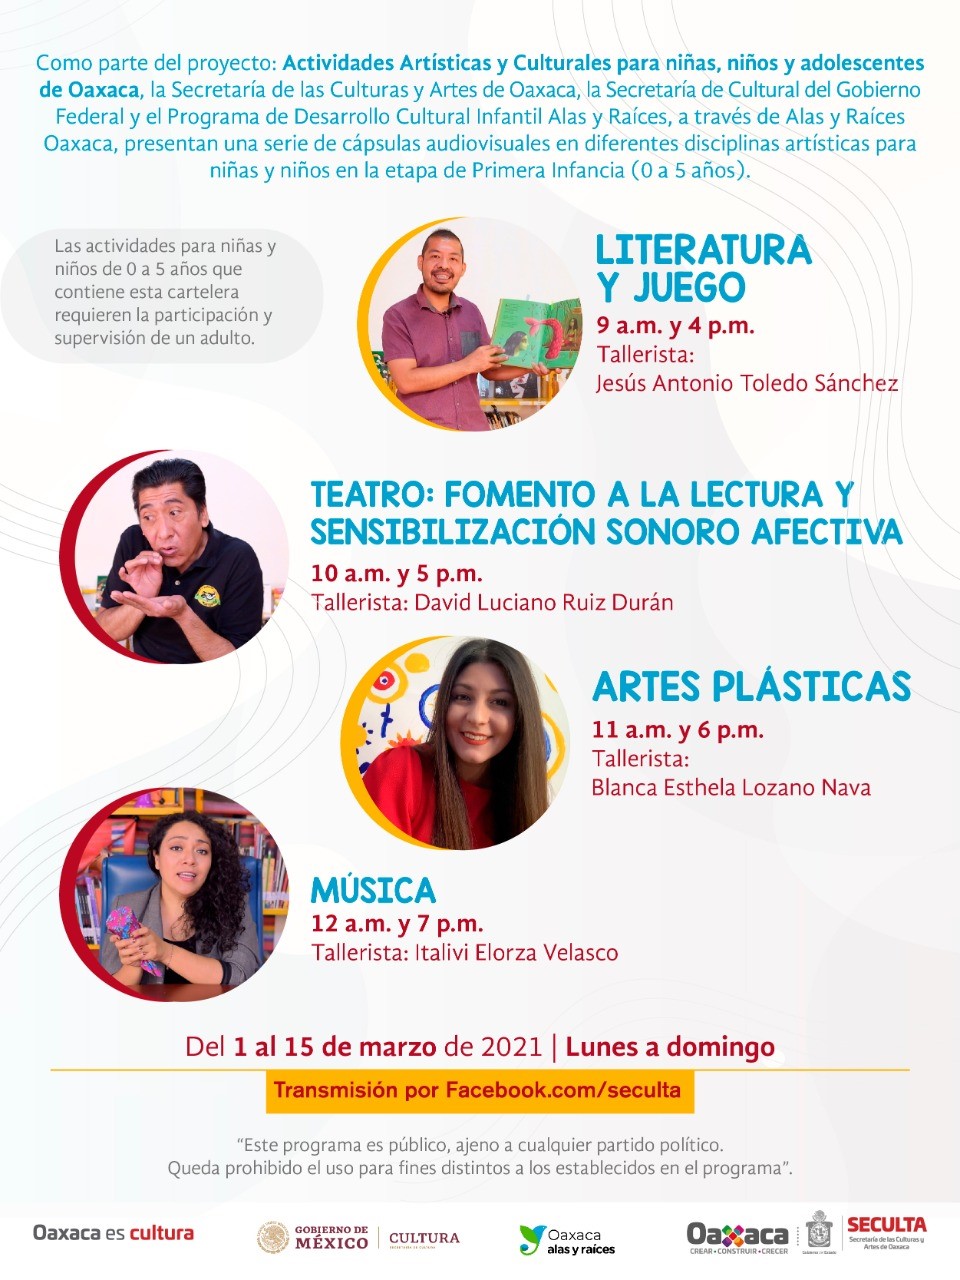 Transmite Seculta las cápsulas “Actividades Artísticas y Culturales para niñas, niños y adolescentes de Oaxaca”